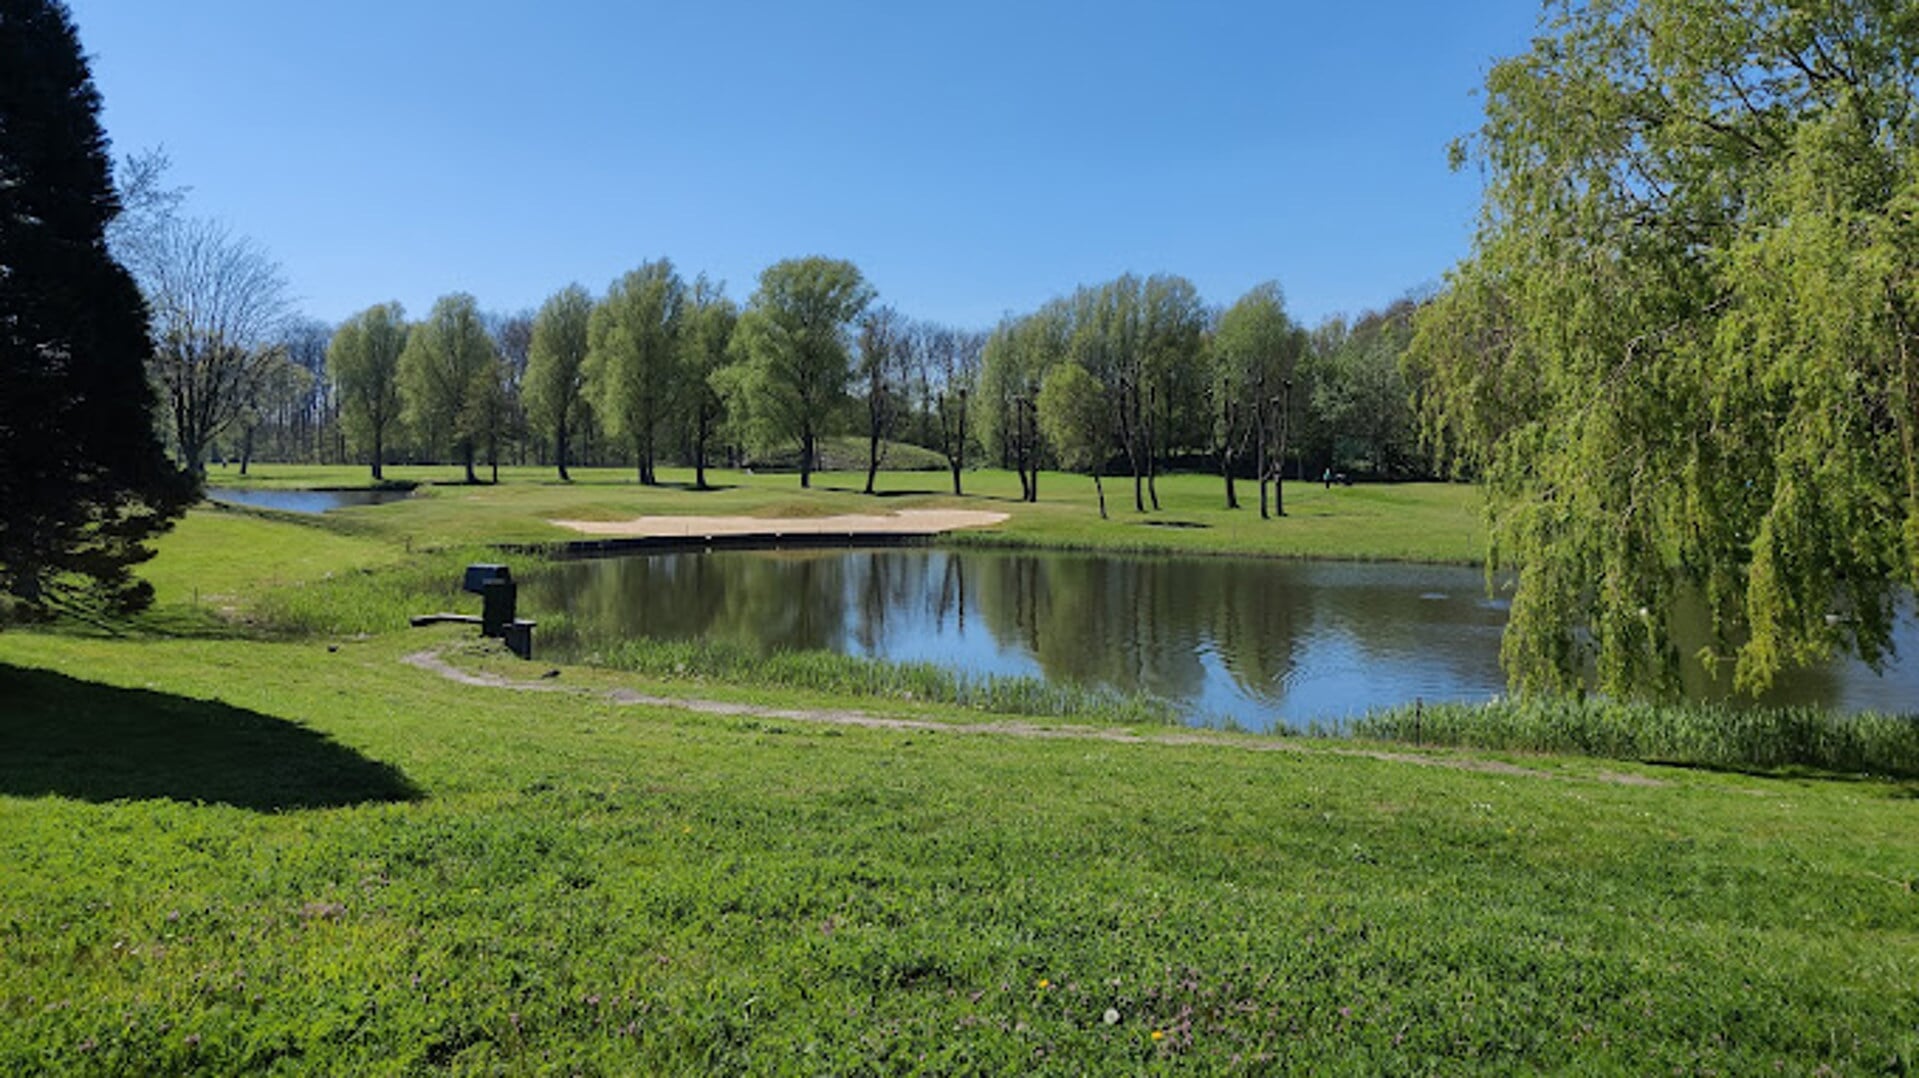 Het toernooi vindt voor de tweede keer plaats op de locatie van golfclub Kleiburg in Brielle.